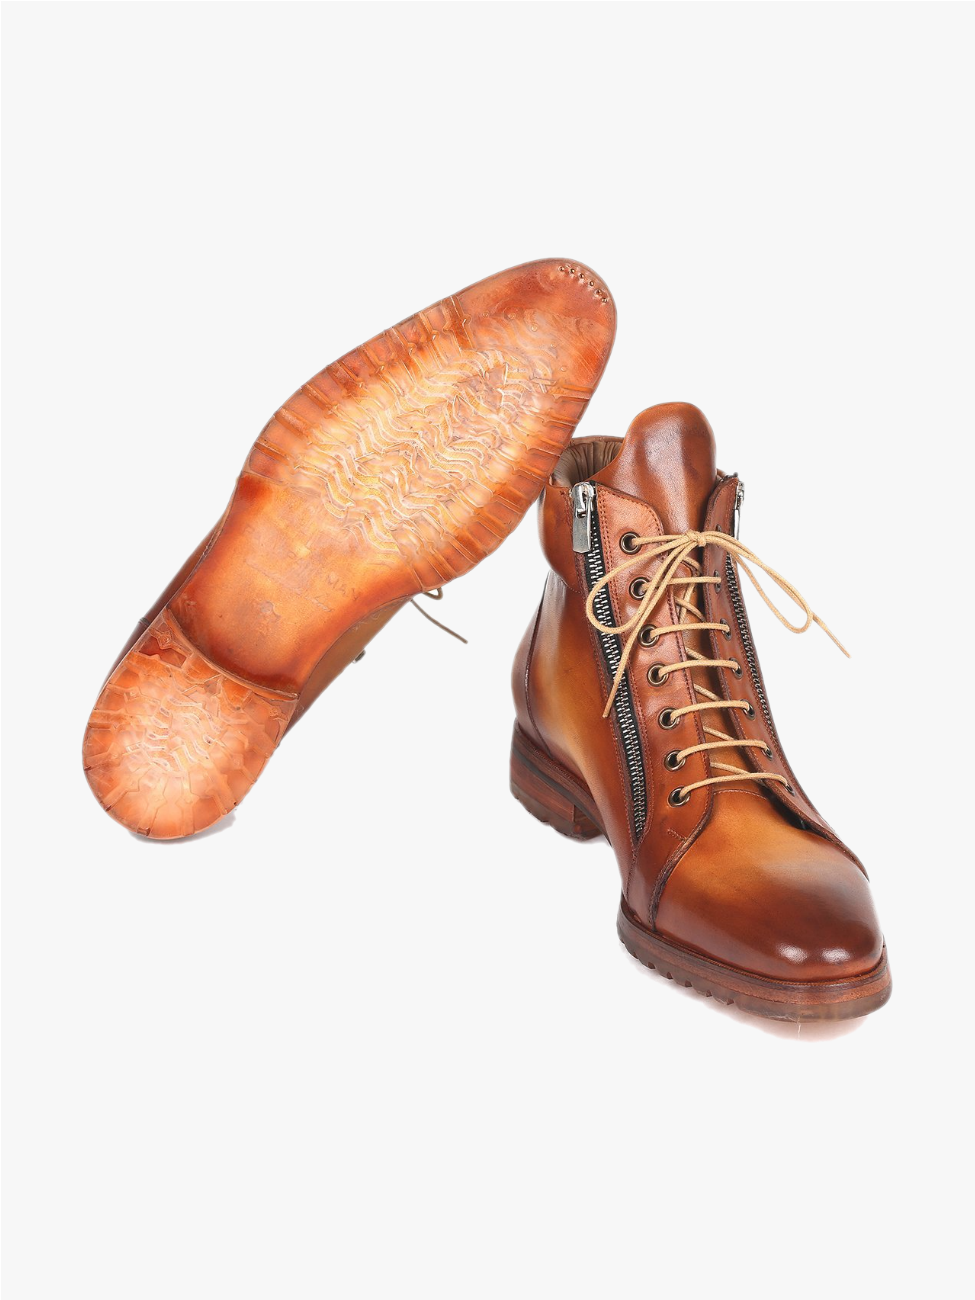 Paul Parkman Men's Side Zipper Leather Boots Light Brown